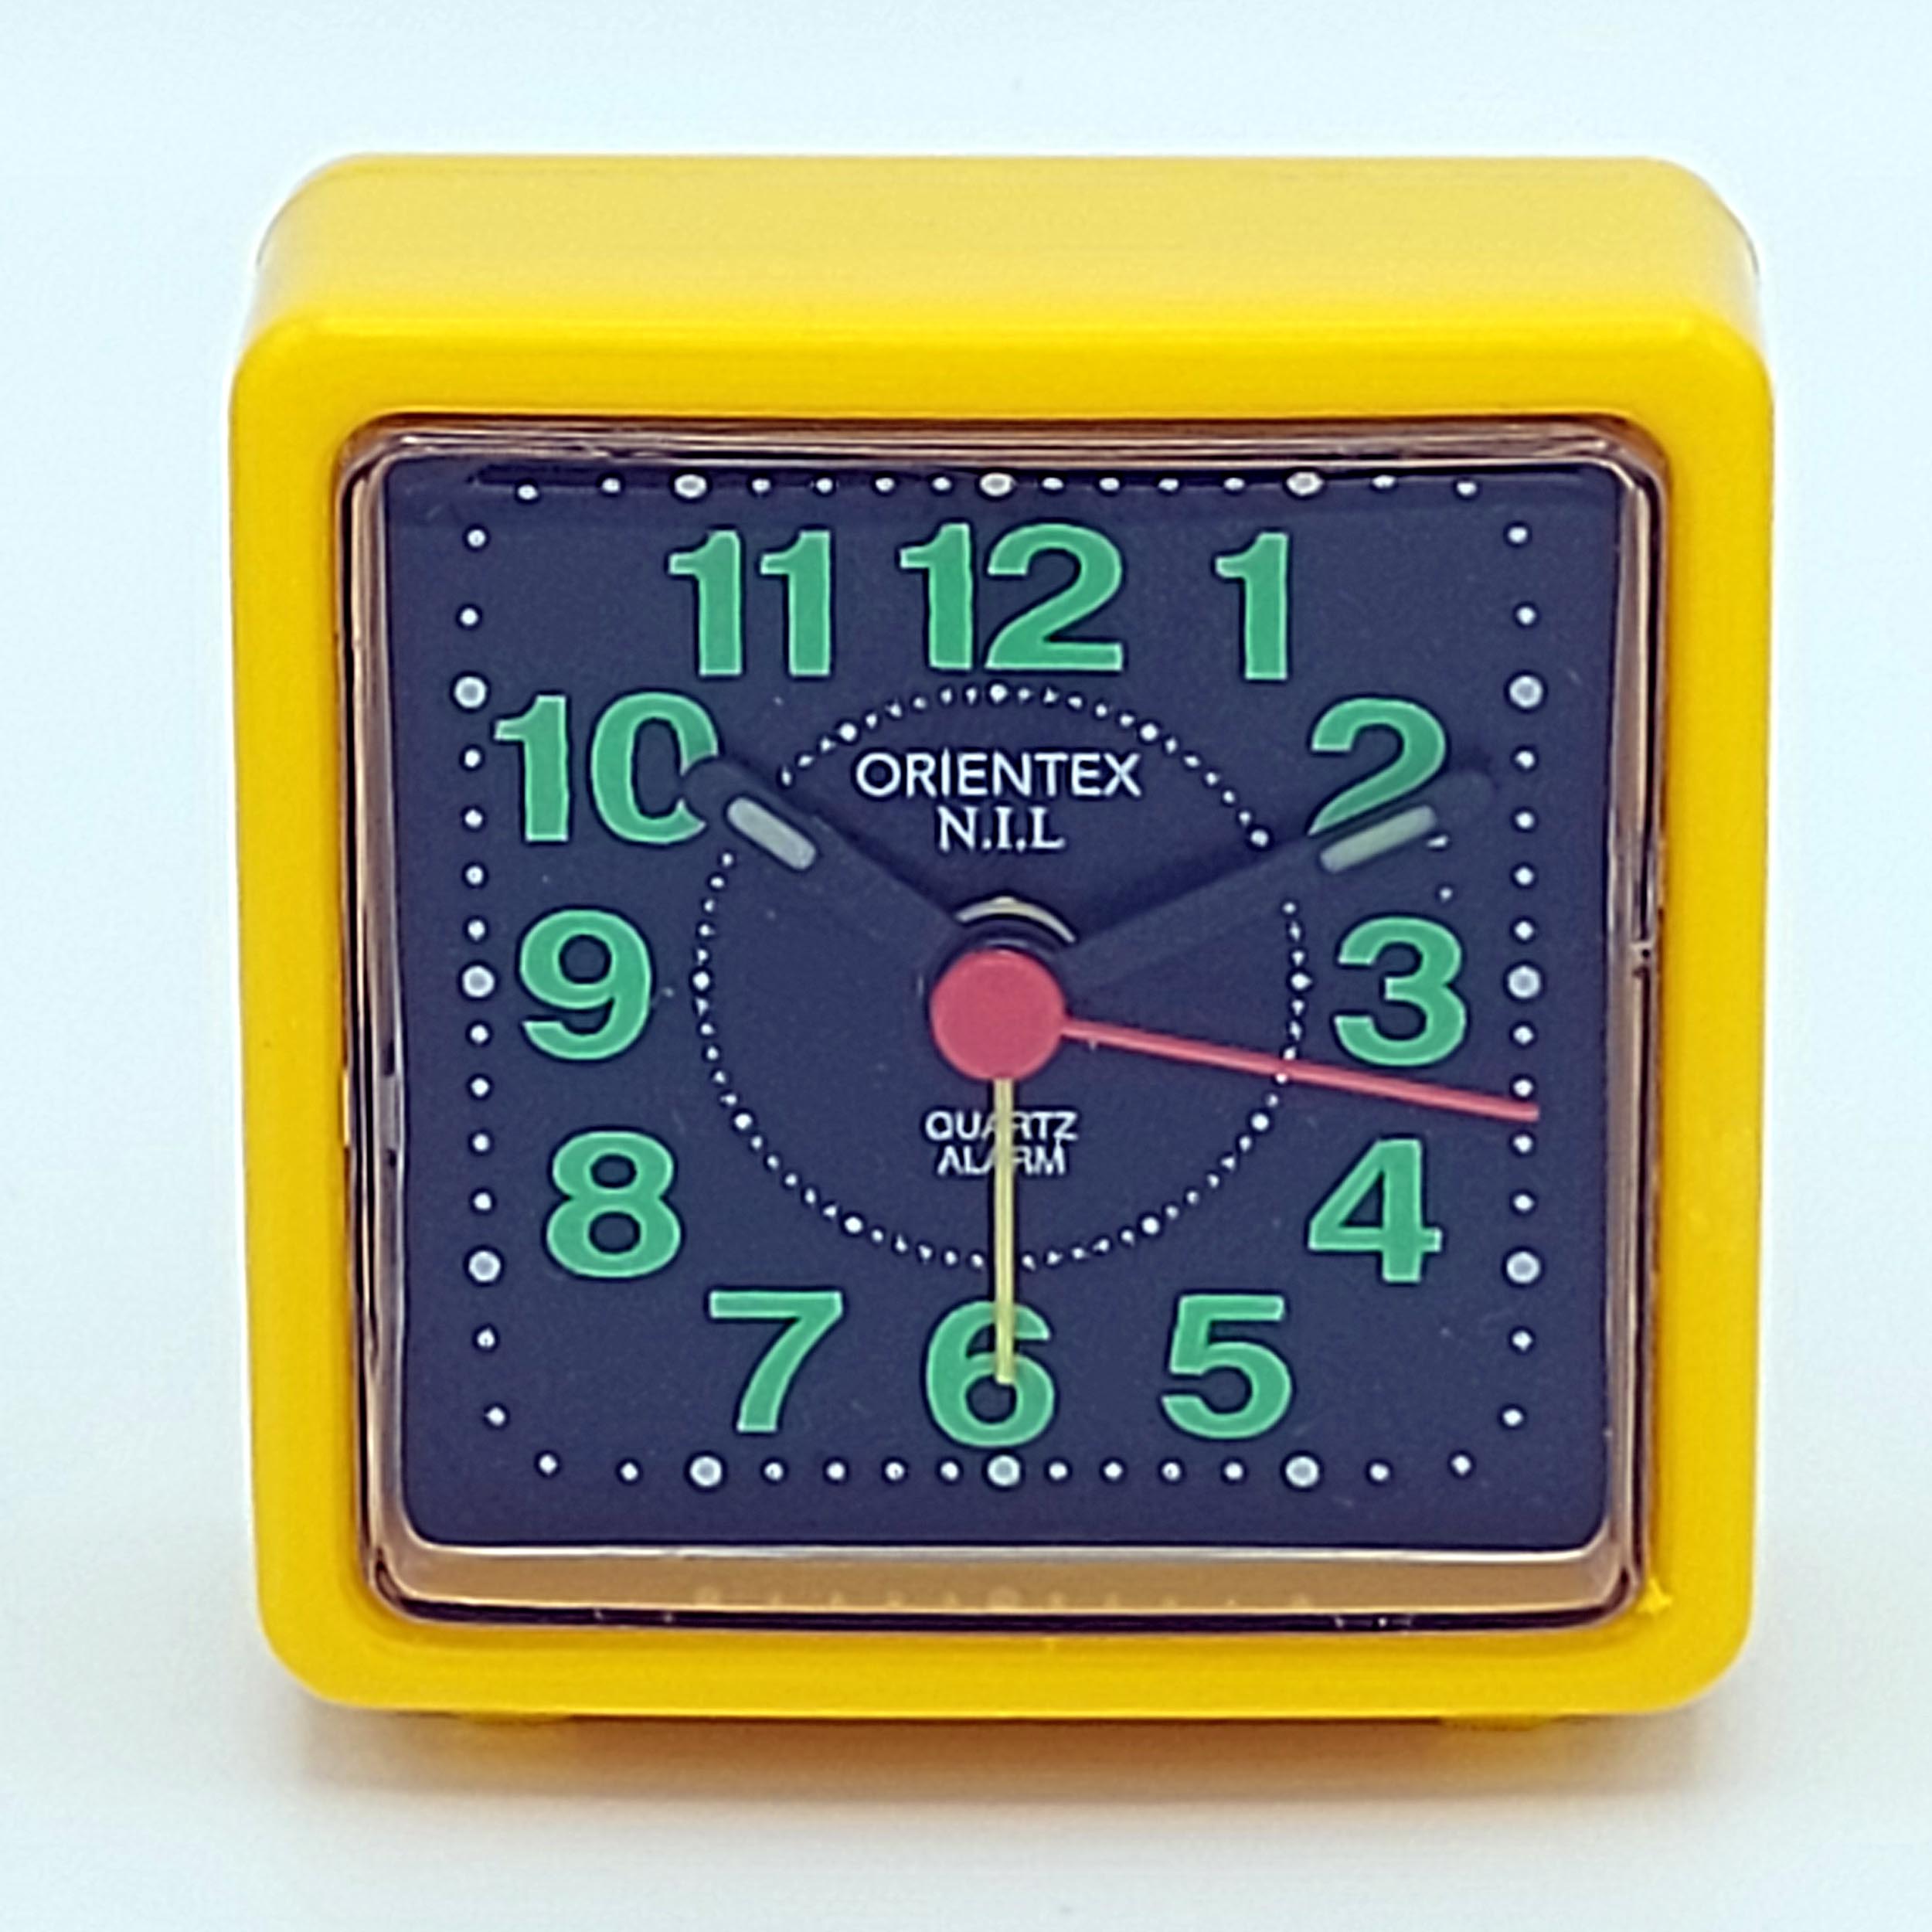 ساعت رومیزی ارینتکس مدل 111